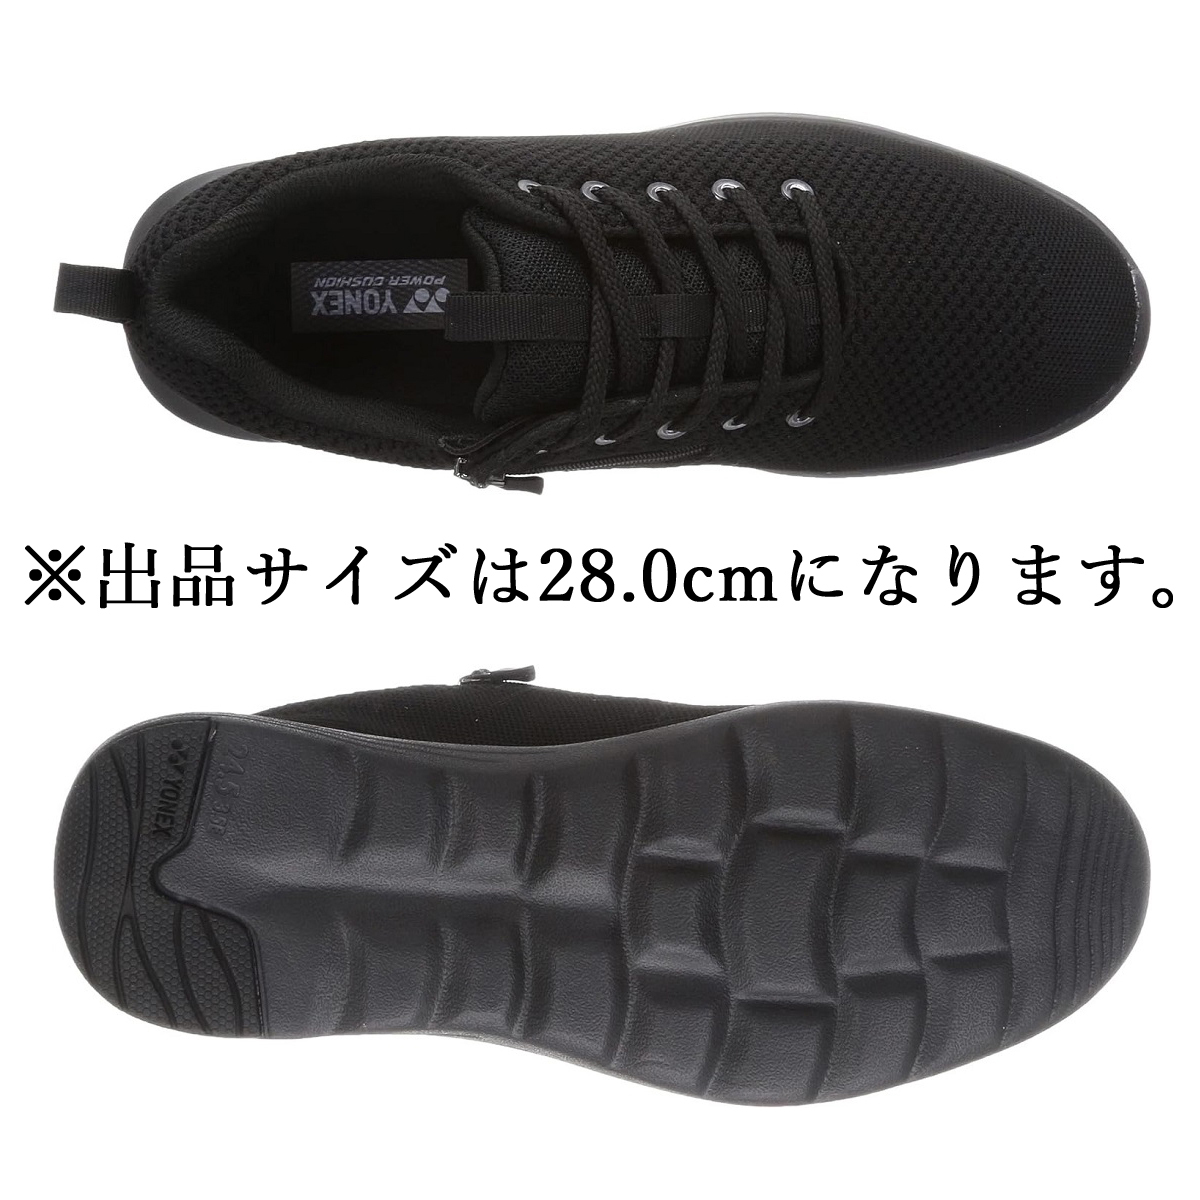 M01Y черный / черный 28.0cm Yonex YONEX энергия подушка прогулочные туфли мужской 3.5E застежка-молния имеется легкий спортивные туфли.